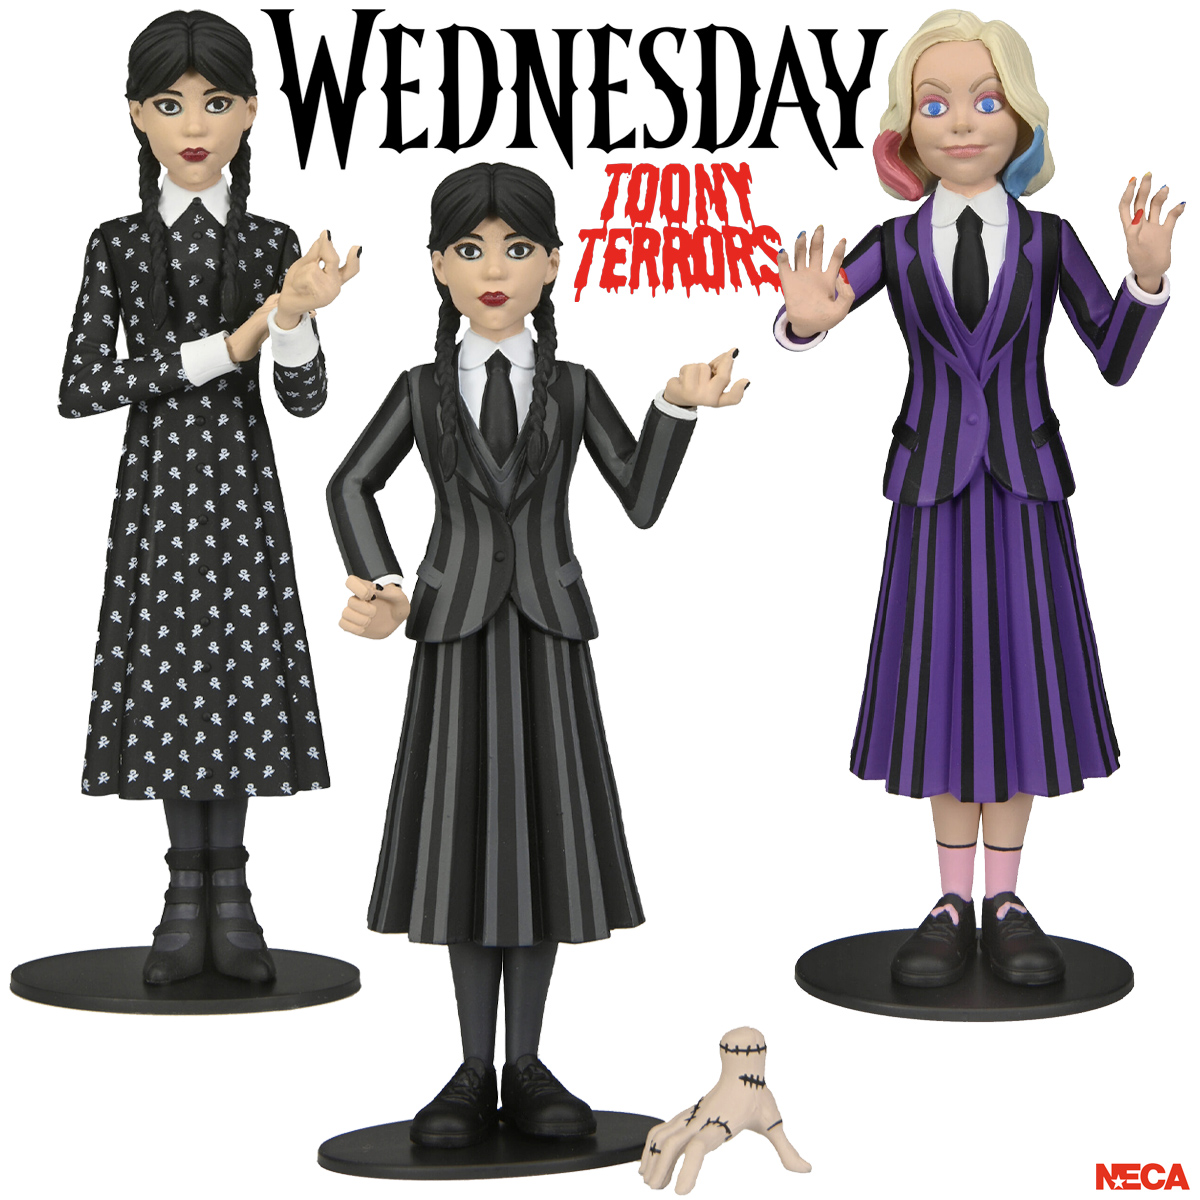 Figuras Toony Terrors da Série Wednesday do Netflix